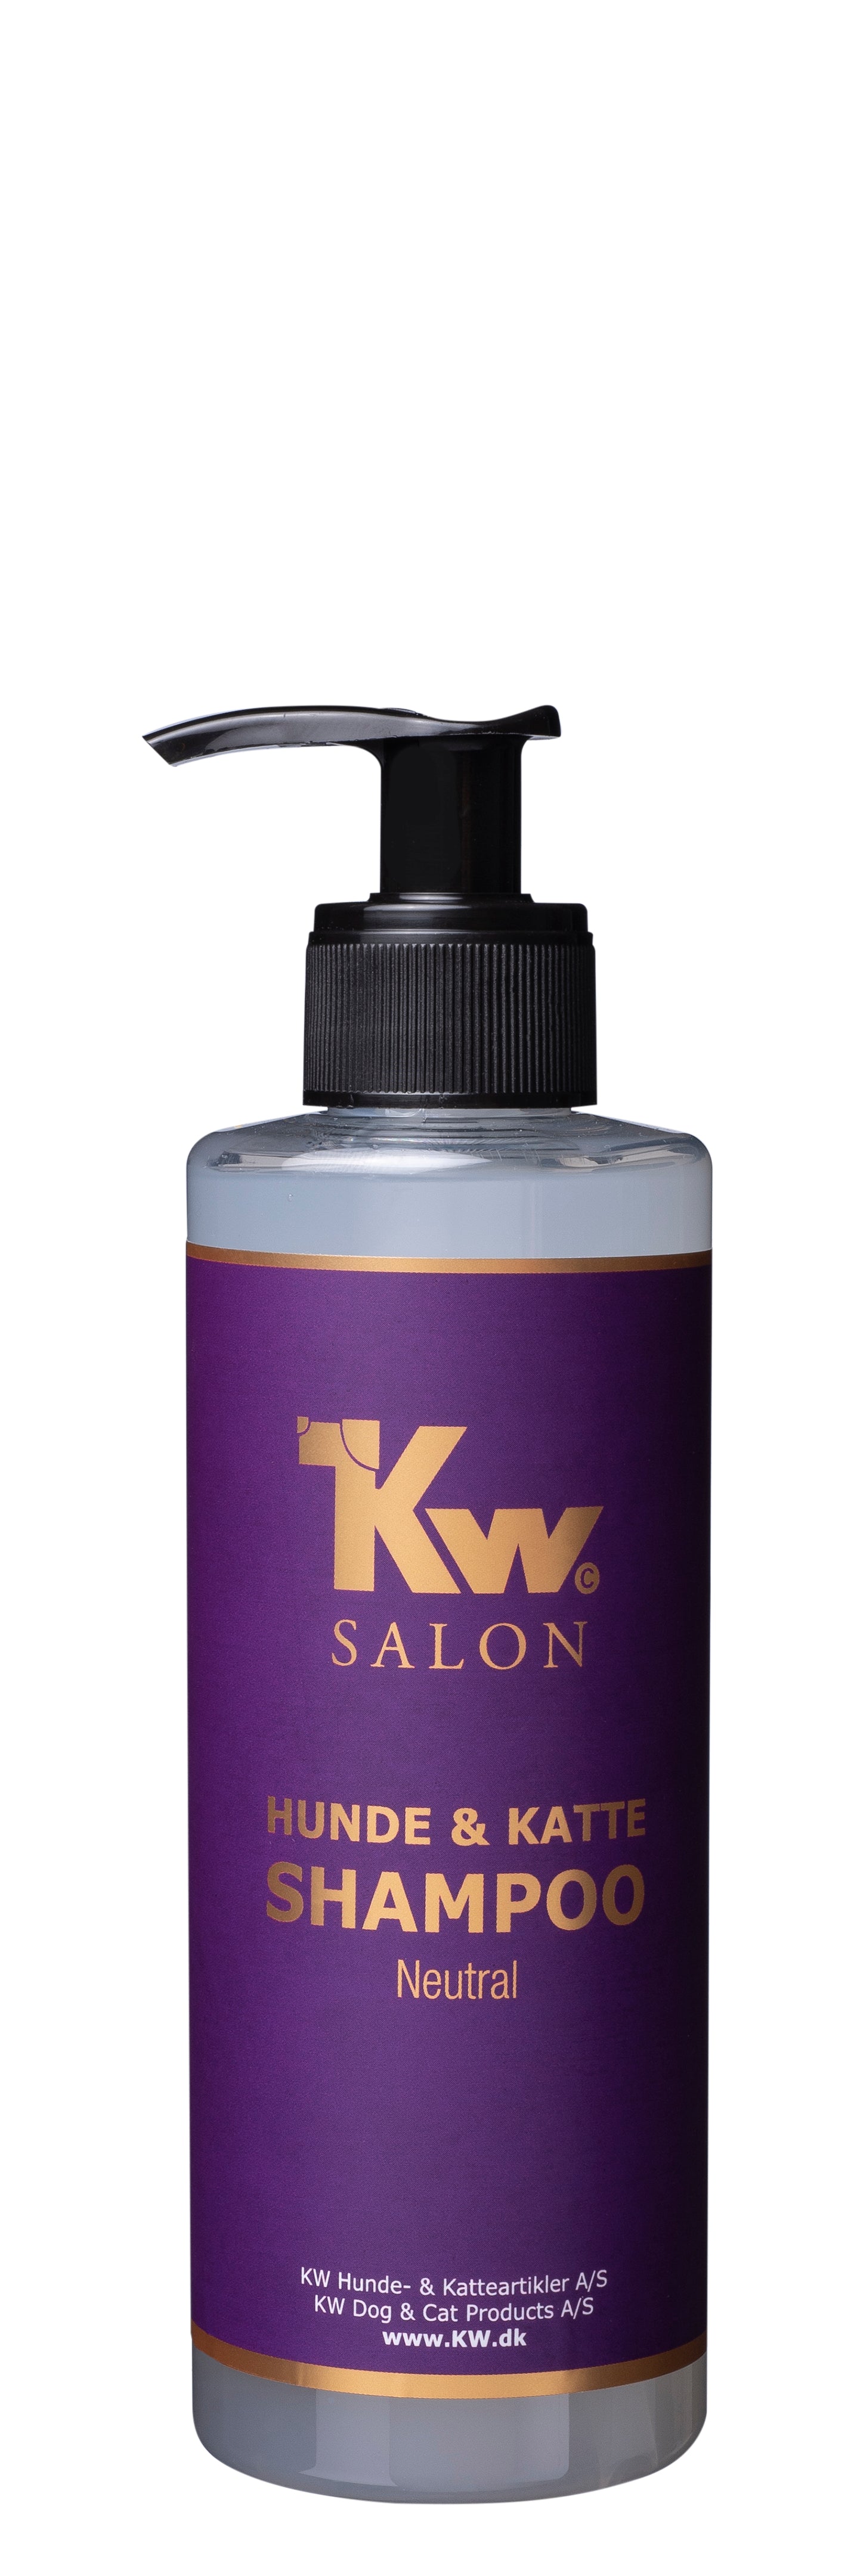 KW shampoo neutral, 300ml– Totteland.dk